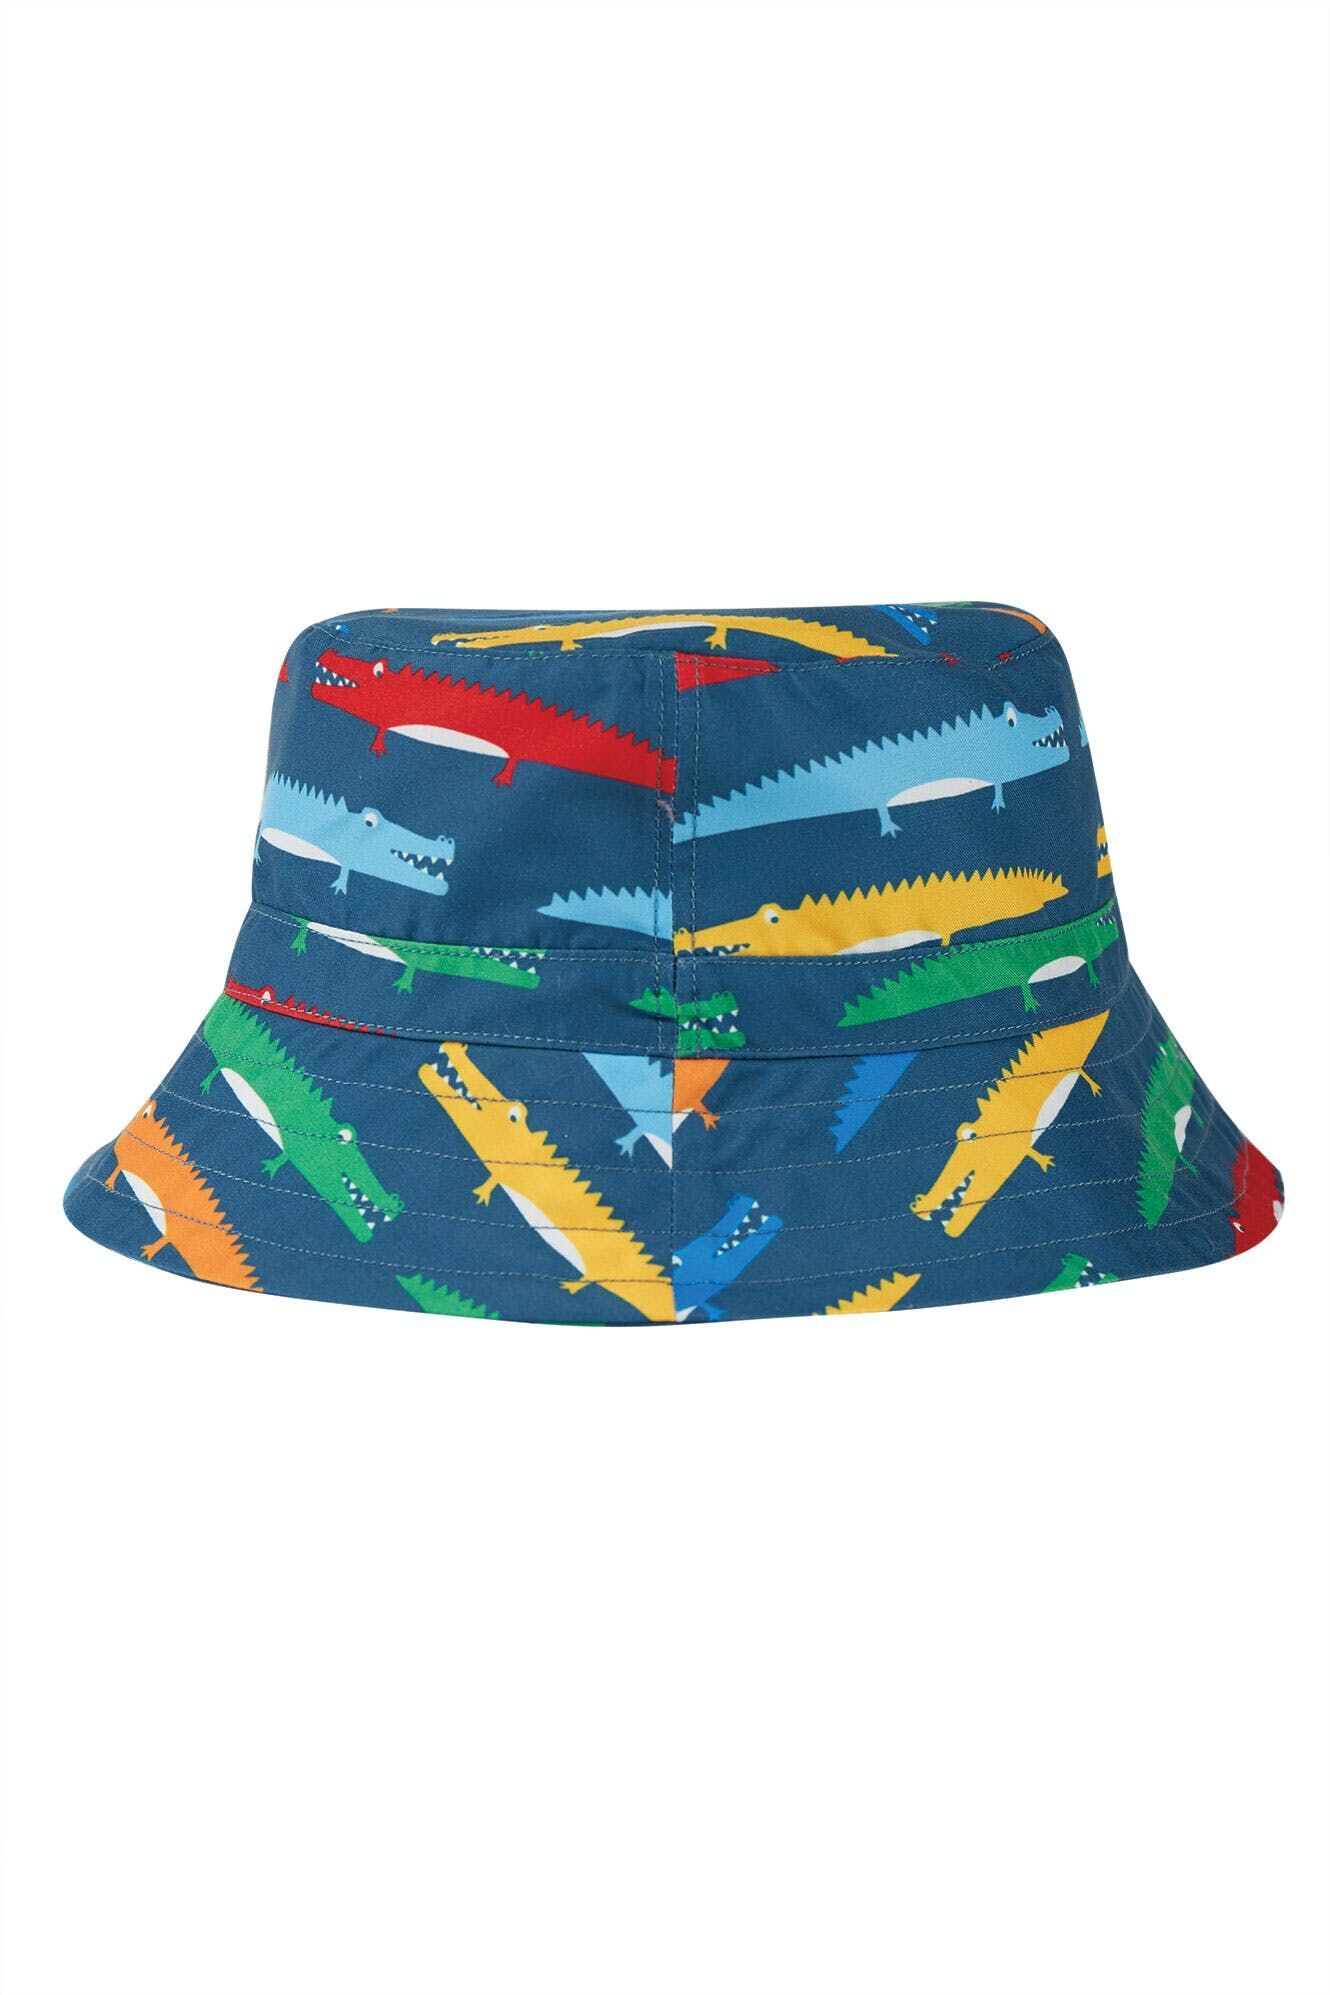 Harbour Swim Hat